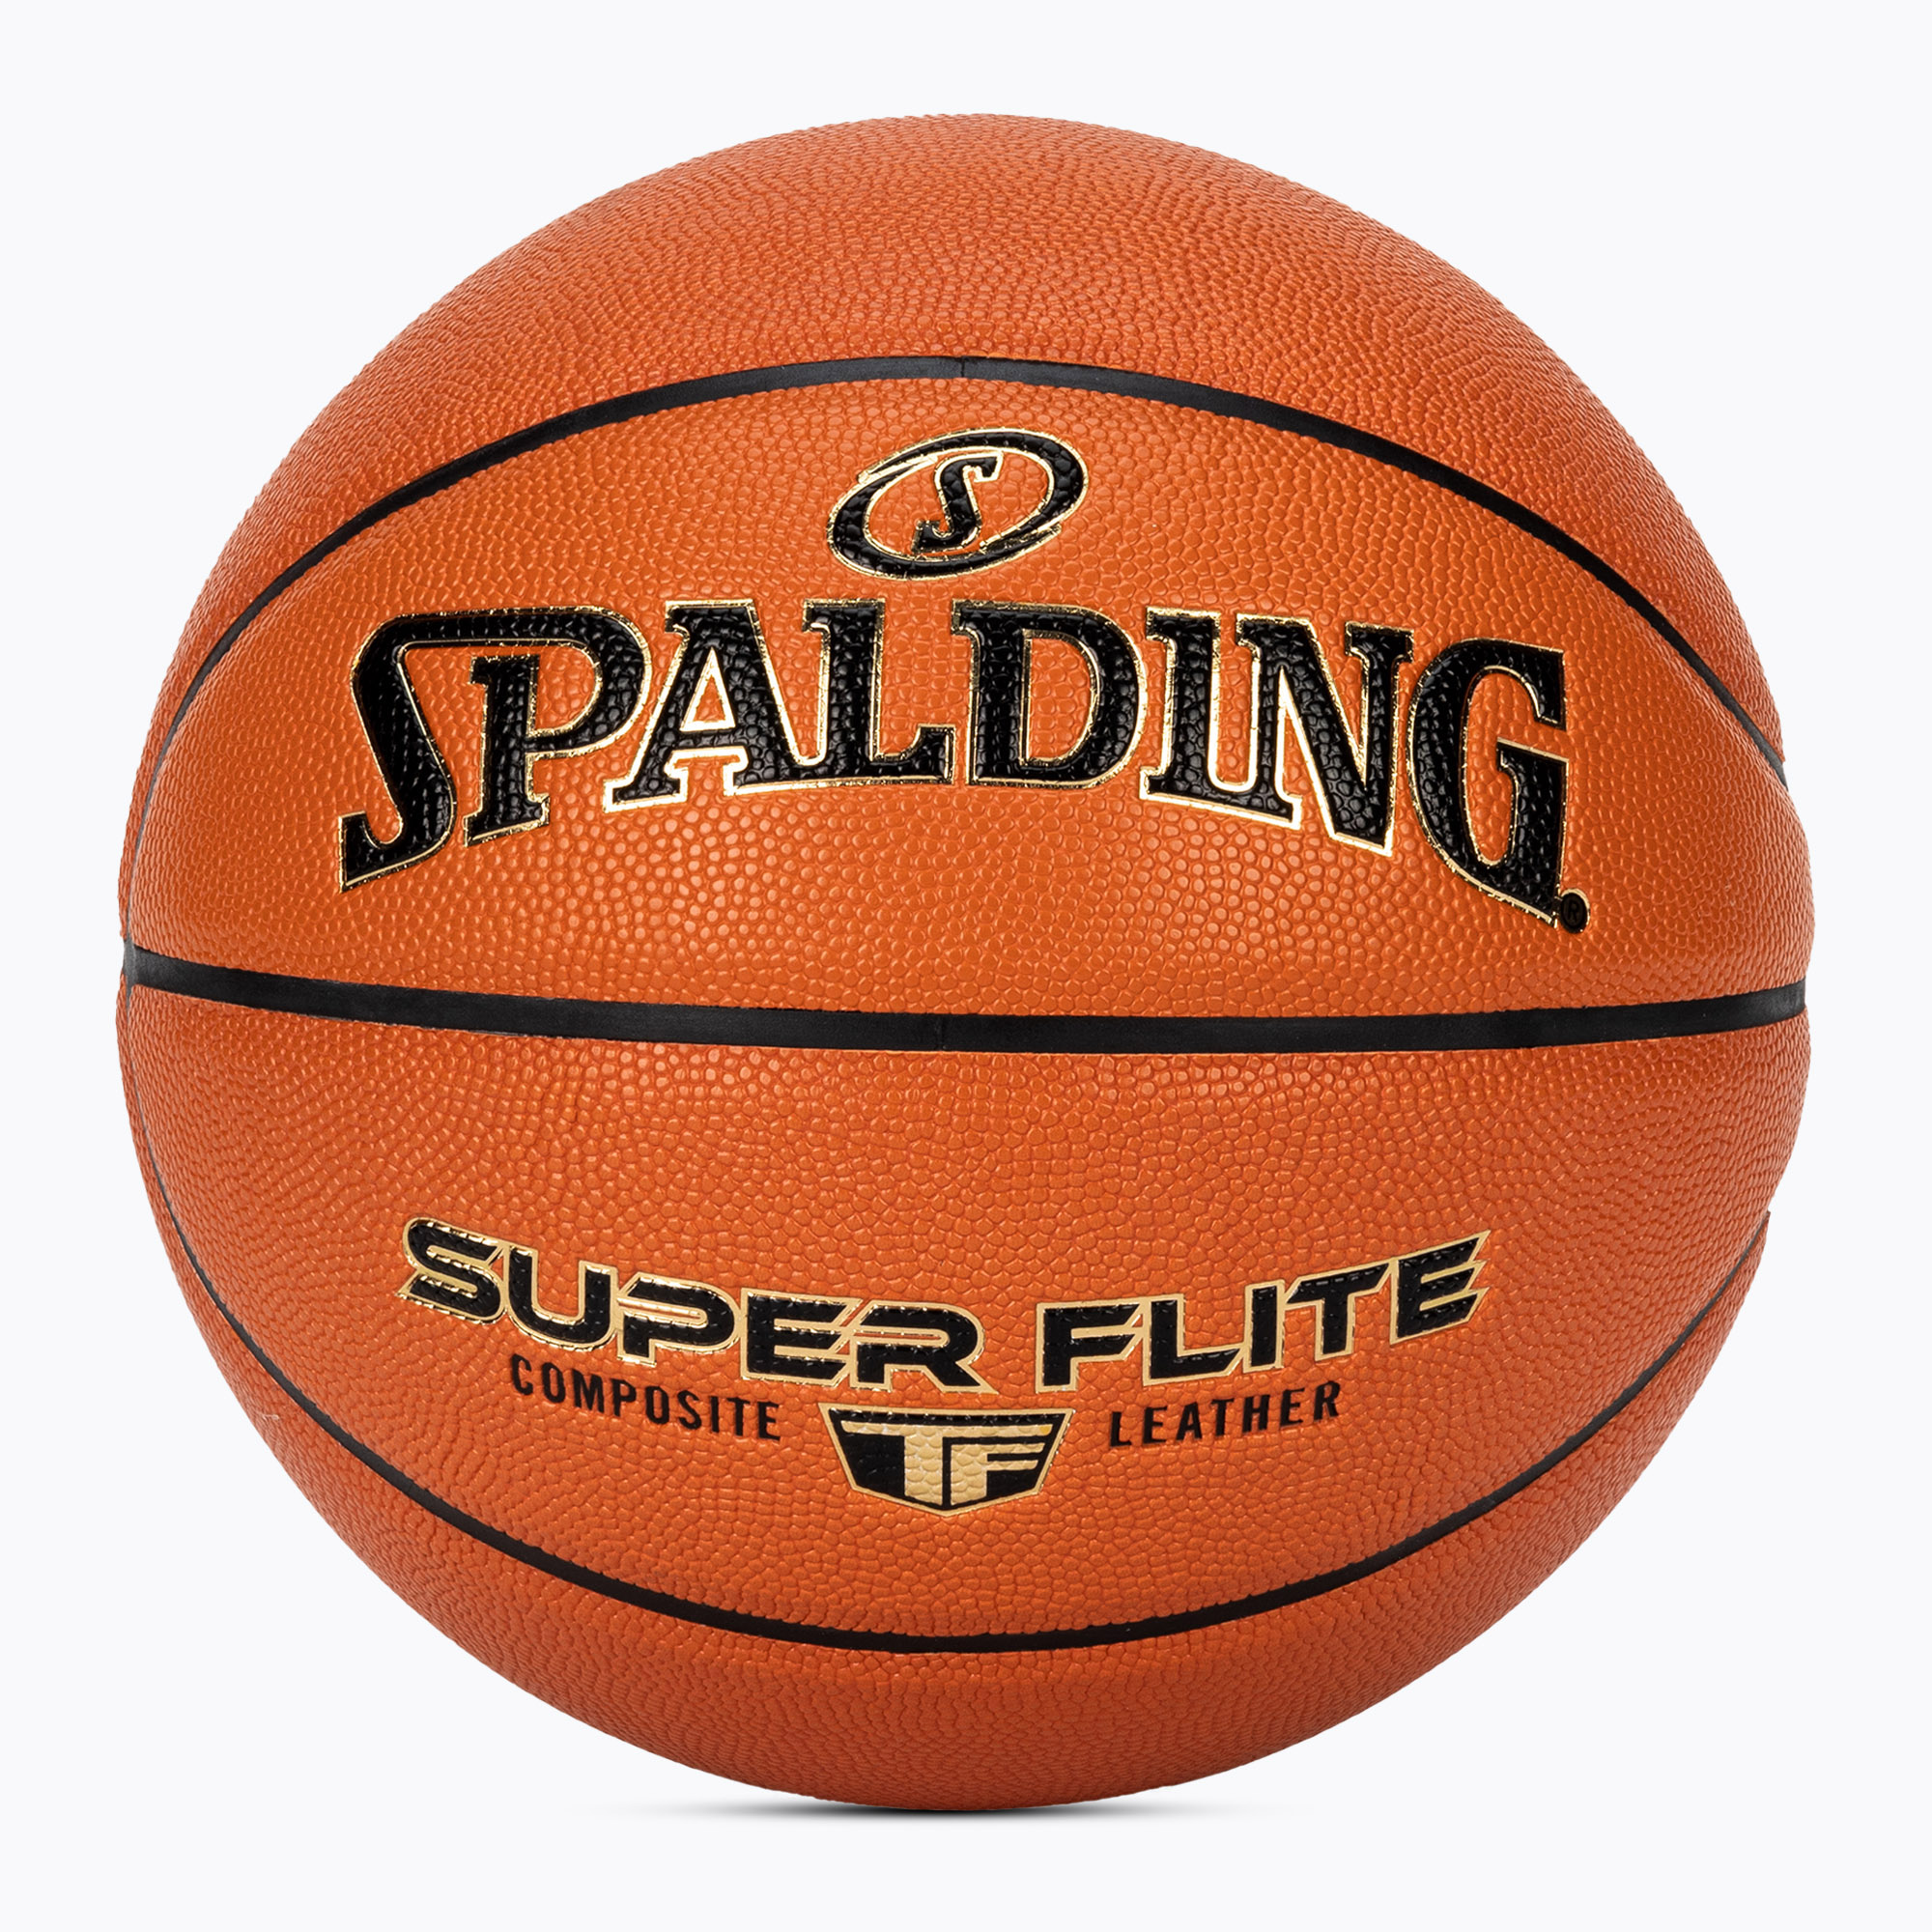 Spalding Super Flite basketbal oranžová 76927Z veľkosť 7